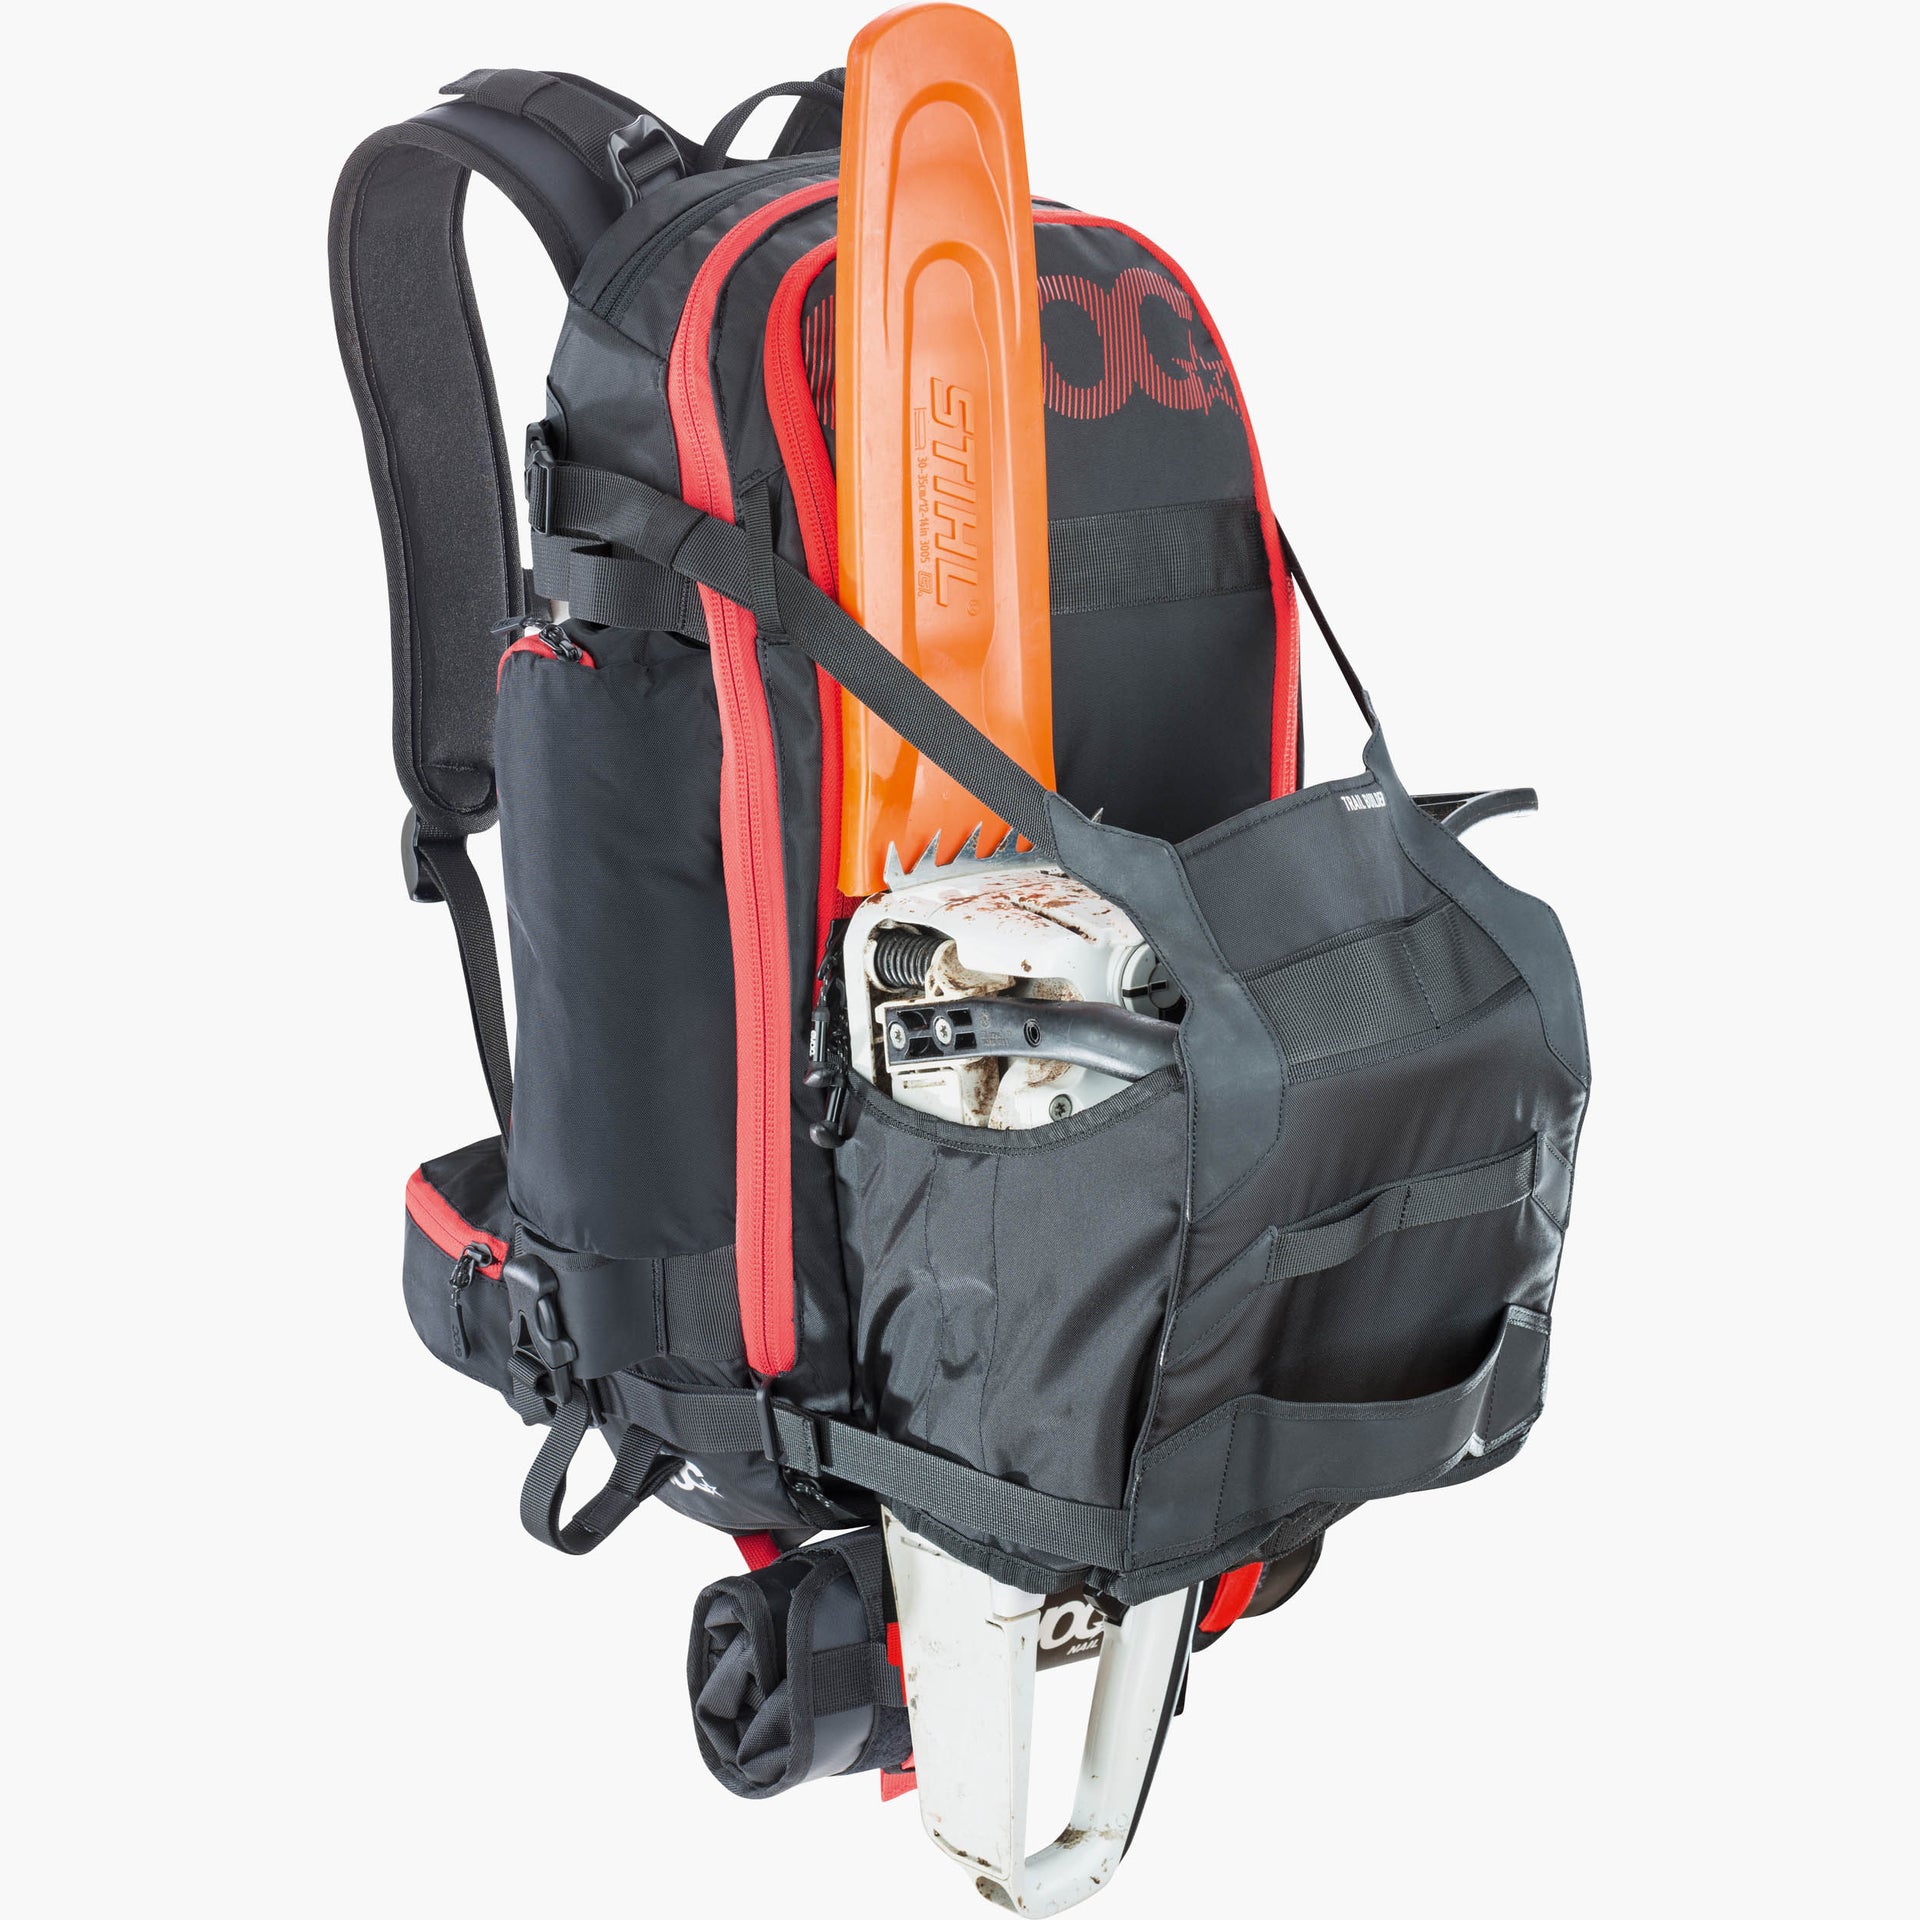 EVOC - Trail Builder 30 Backpack